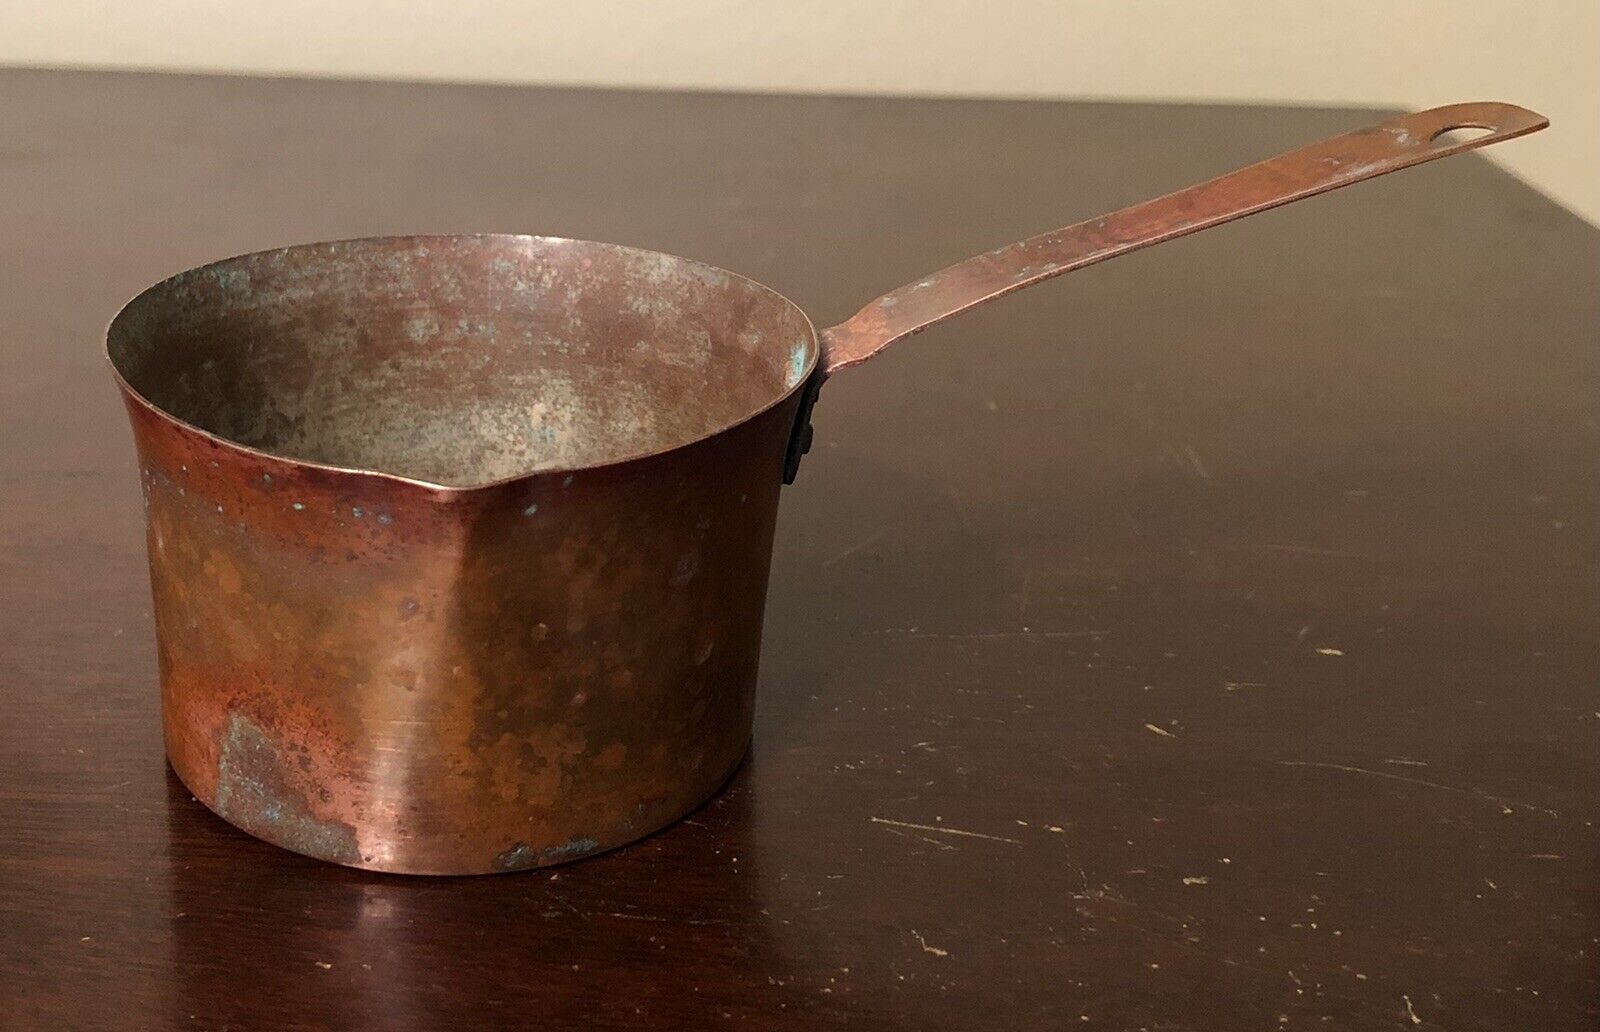 Vintage Copper Measuring Cup w/ Handle - 1/2 Cup Capacity